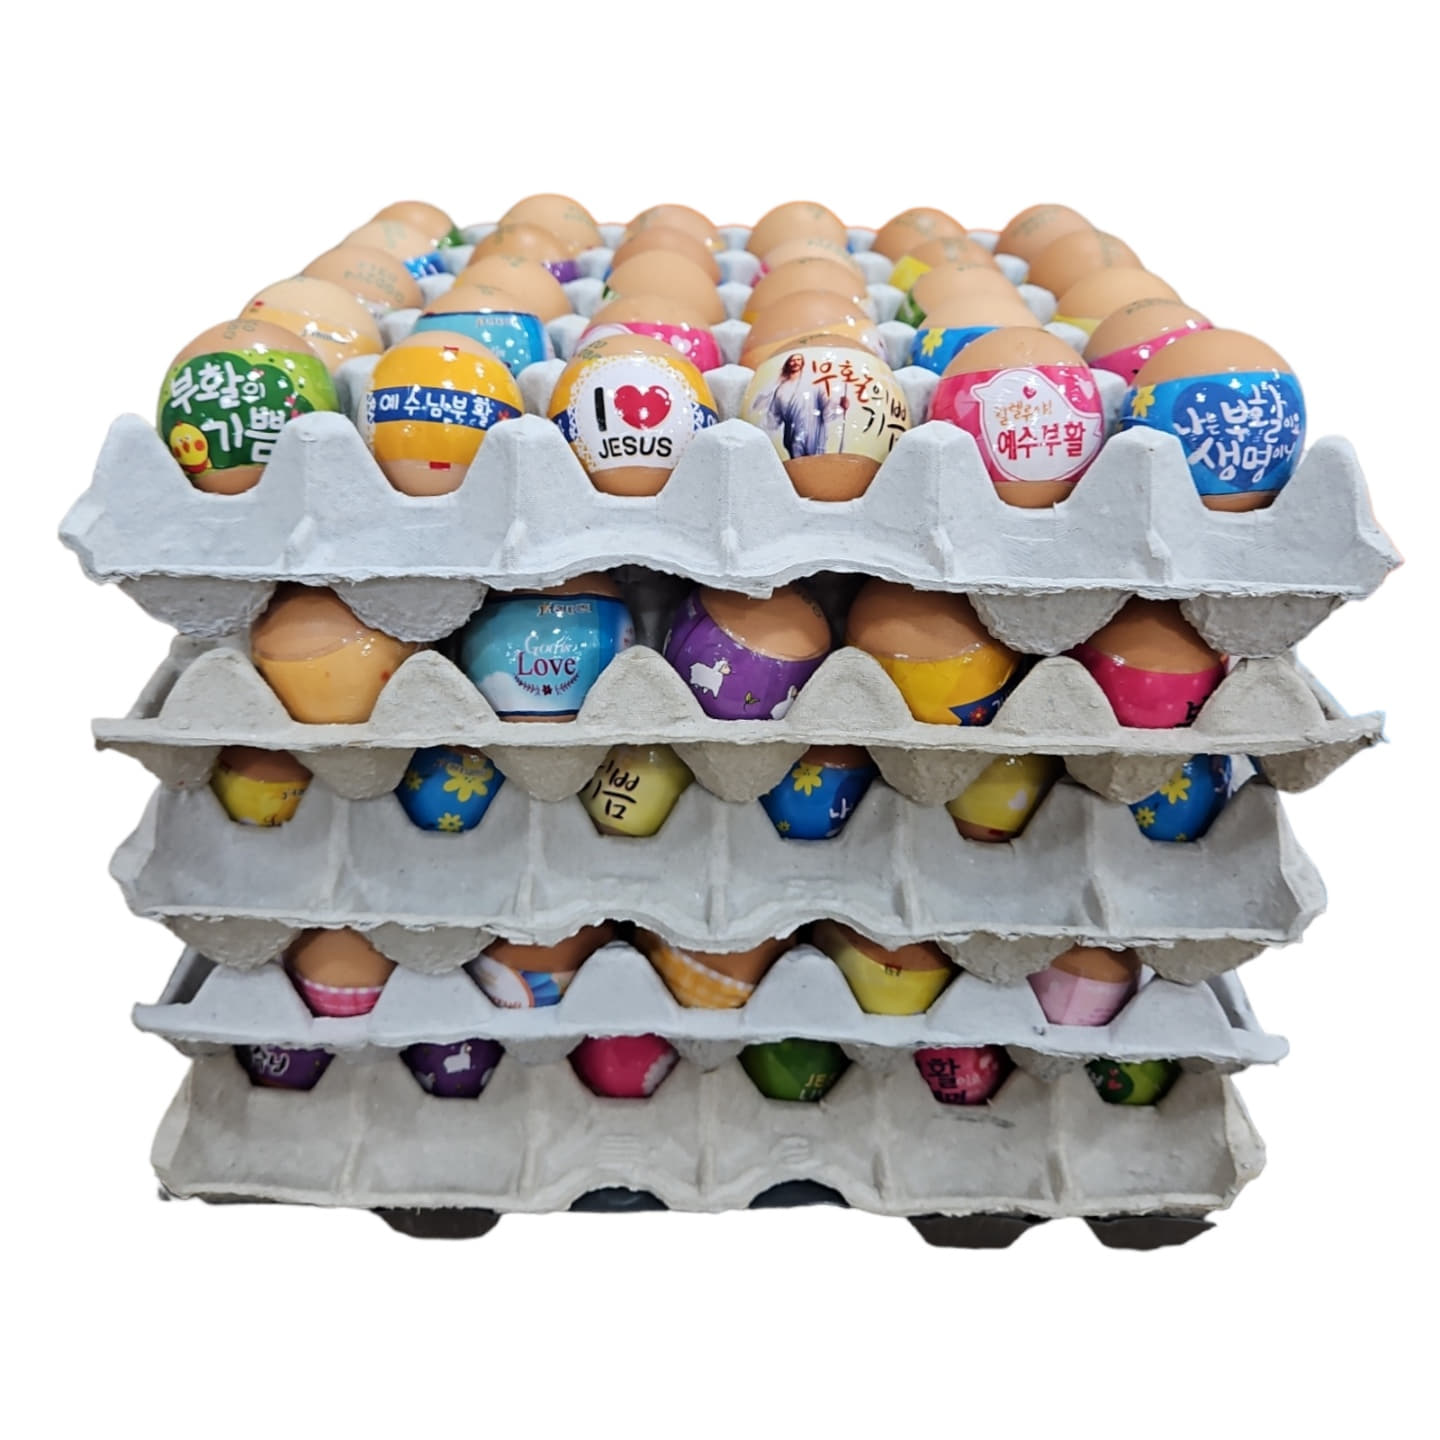 부활절 구운계란 5판 150개 (수축필름 띄지 포장 가능) 구운달걀